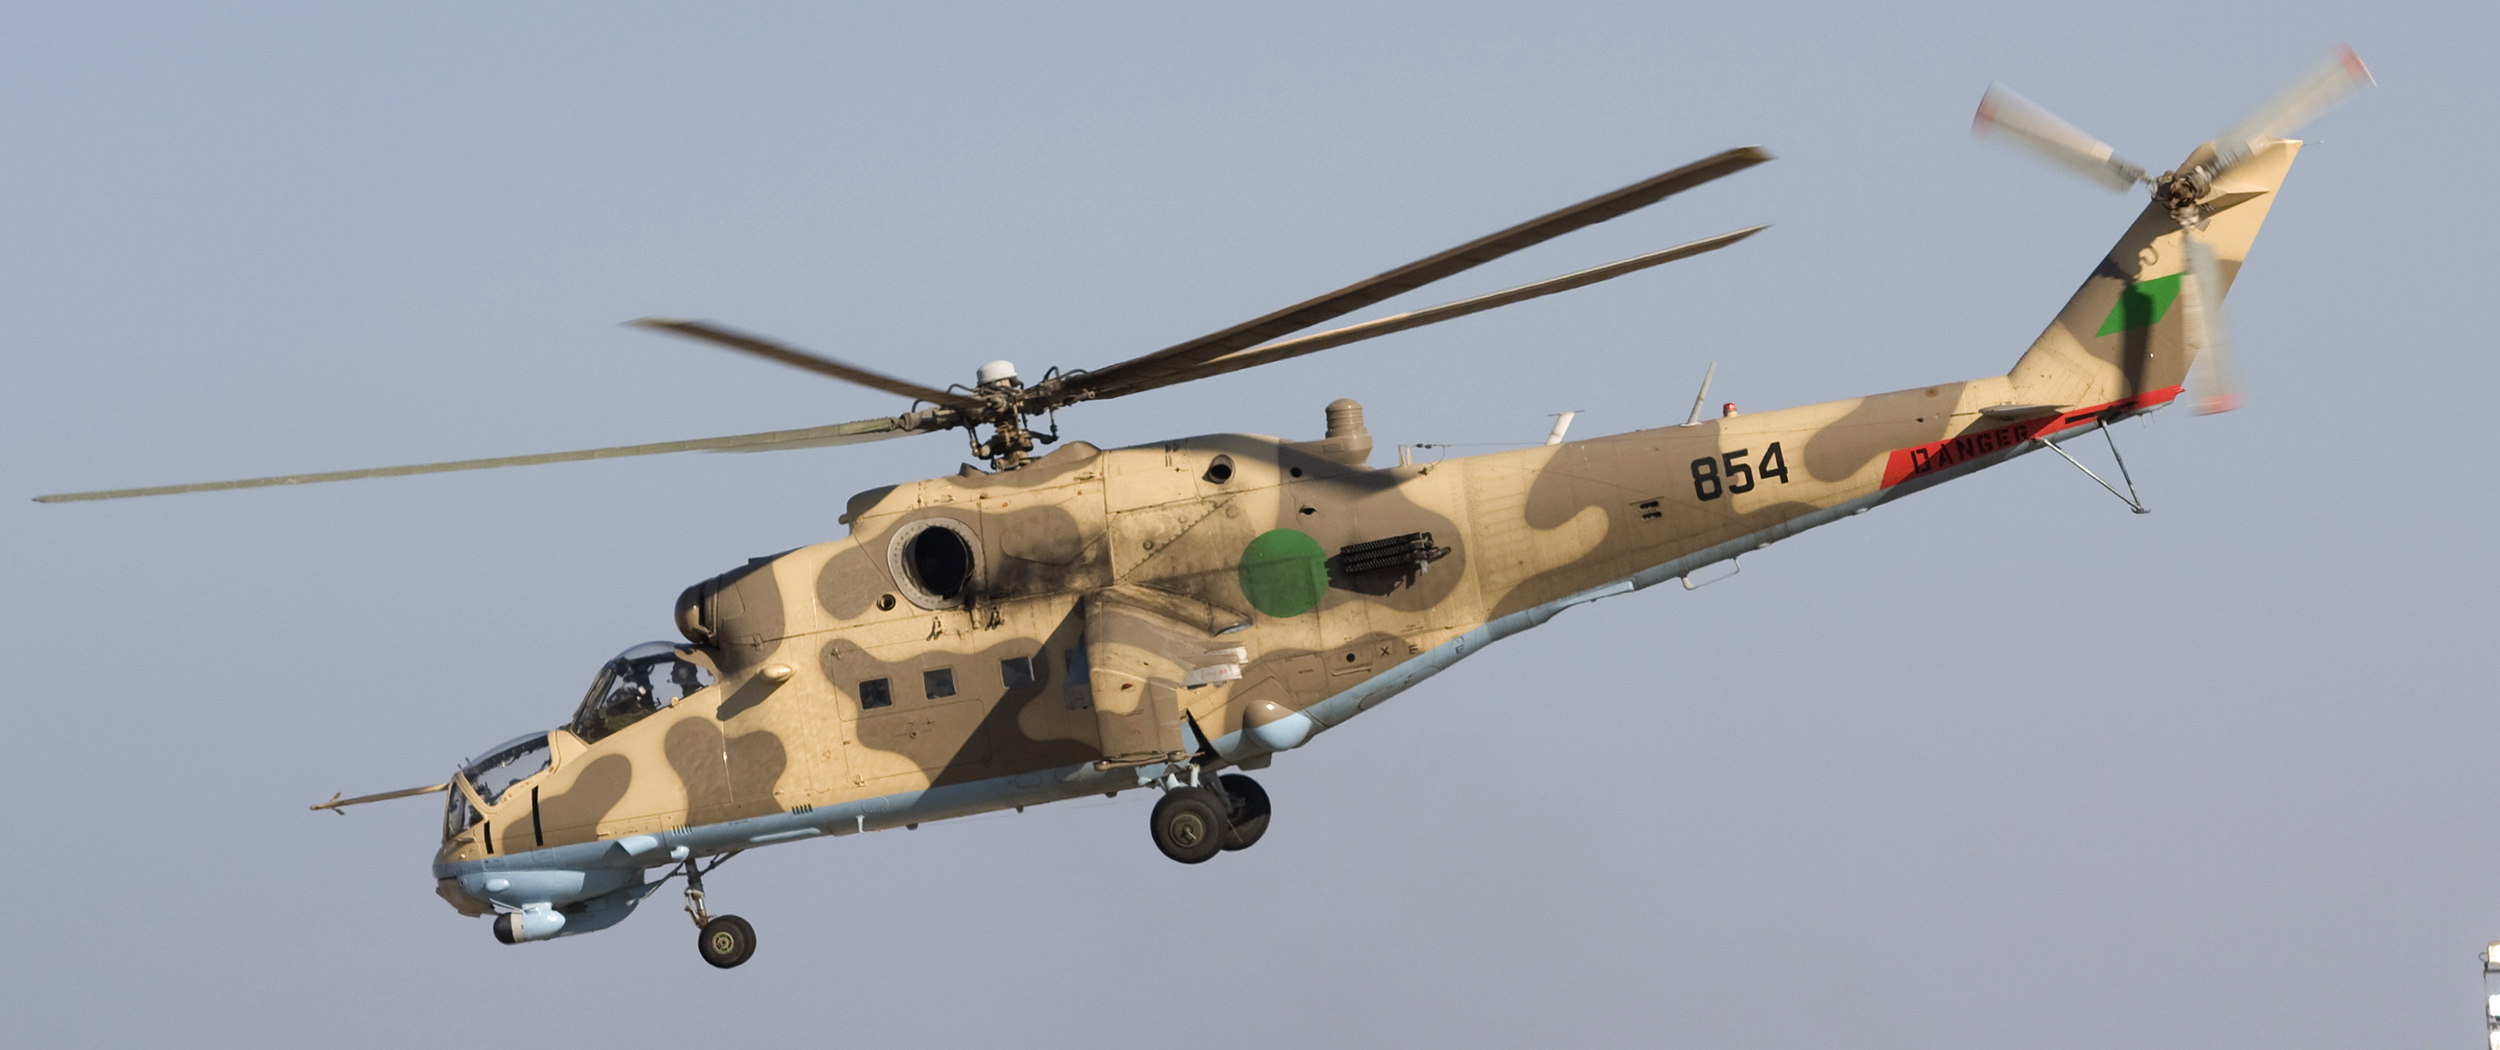 Πτήση για γερά νεύρα: Επιθετικό ελικόπτερο του Εθνικού Στρατού της Λιβύης «γλύφει» το έδαφος